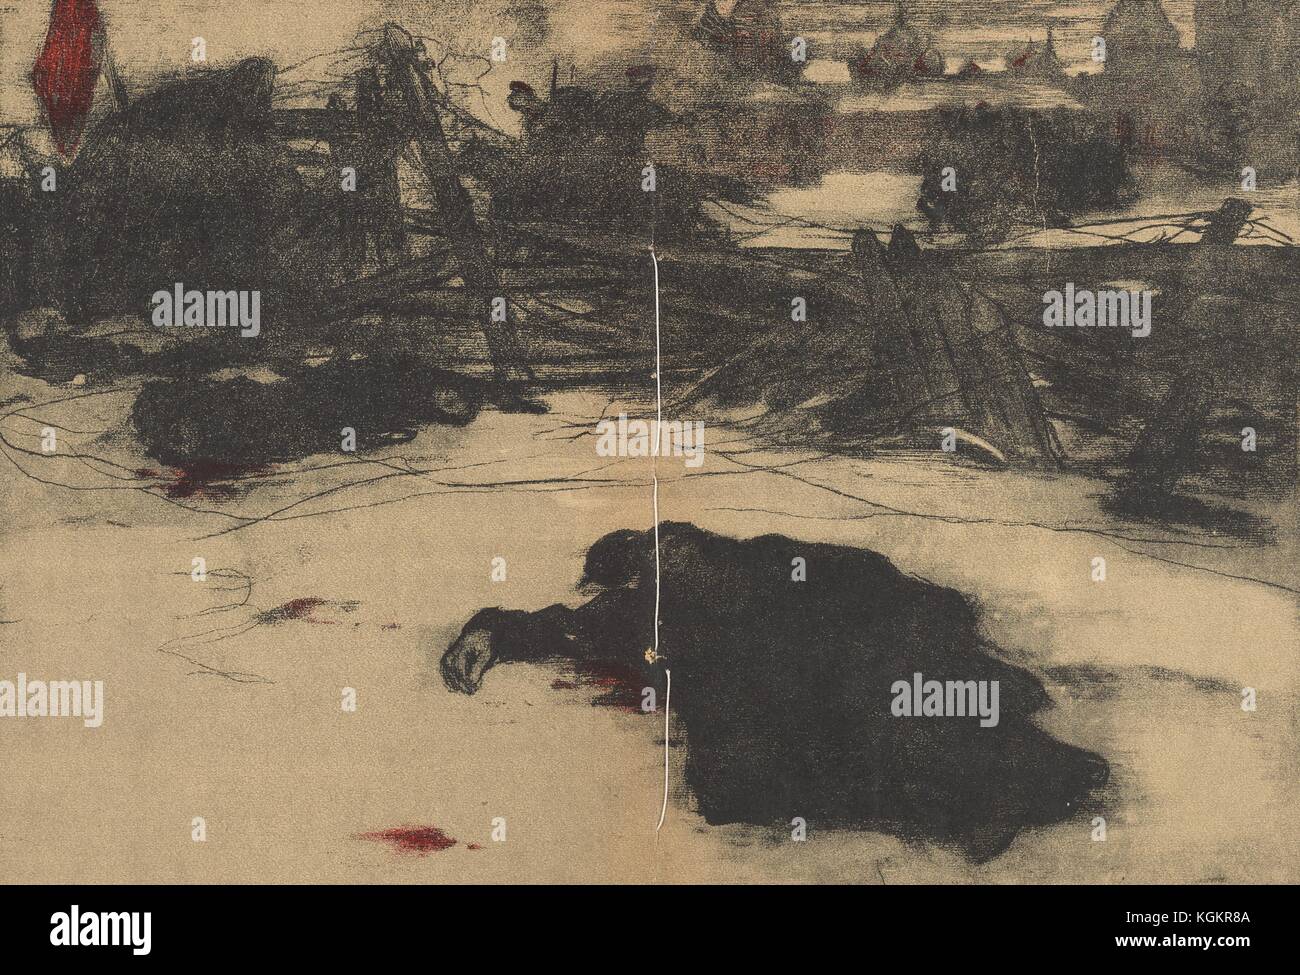 Illustration du journal satirique russe Gamayun d'un champ de bataille avec une fortification militaire et plusieurs hommes couchés sur le sol dans des flaques de sang, avec un drapeau rouge volant à côté d'eux et une ville vue au loin, 1906. Banque D'Images